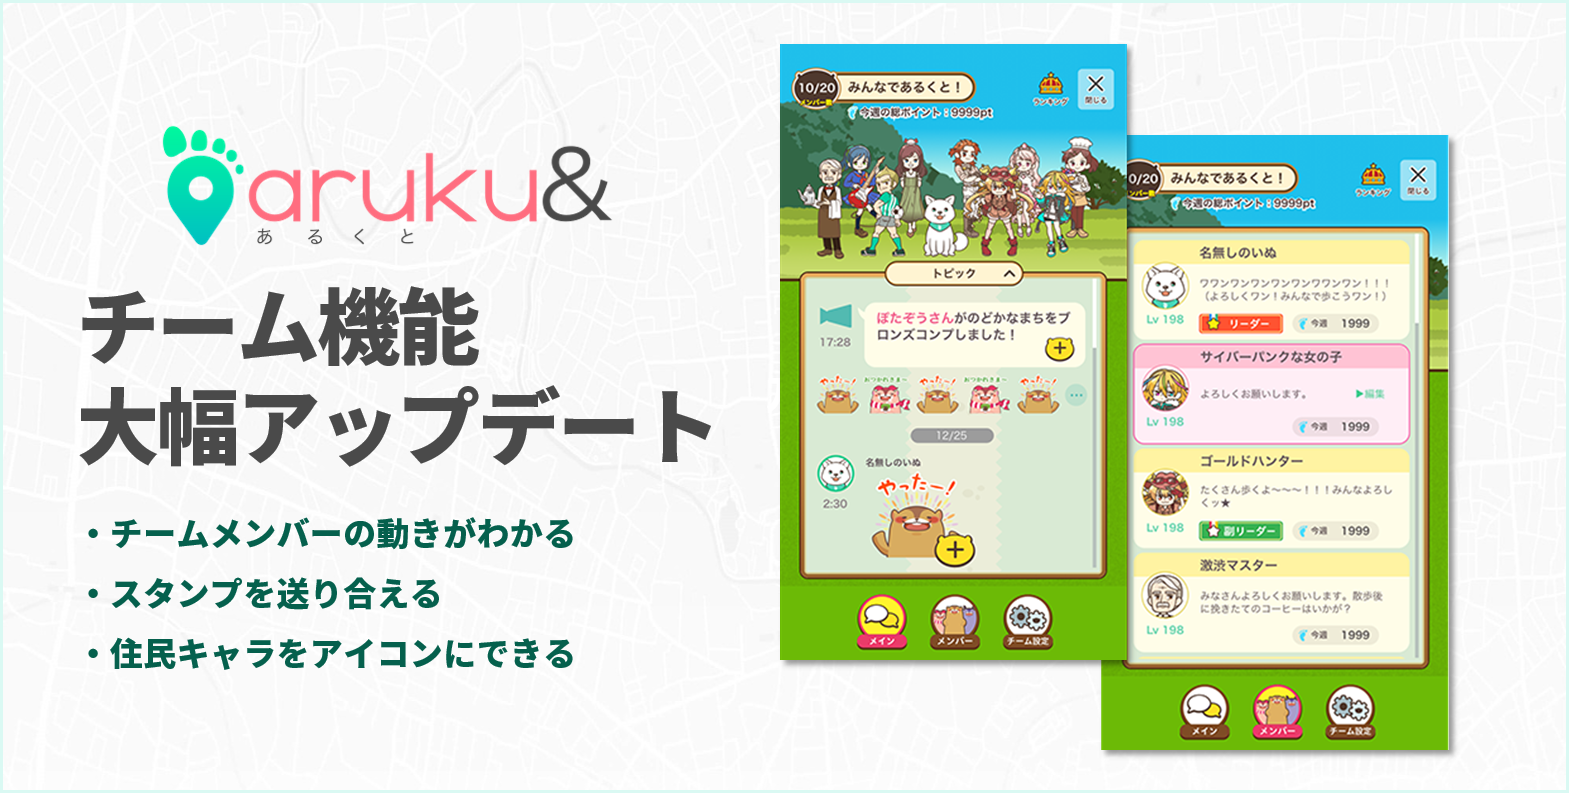 ウォーキングアプリ「aruku&」、チーム機能を大幅アップデート